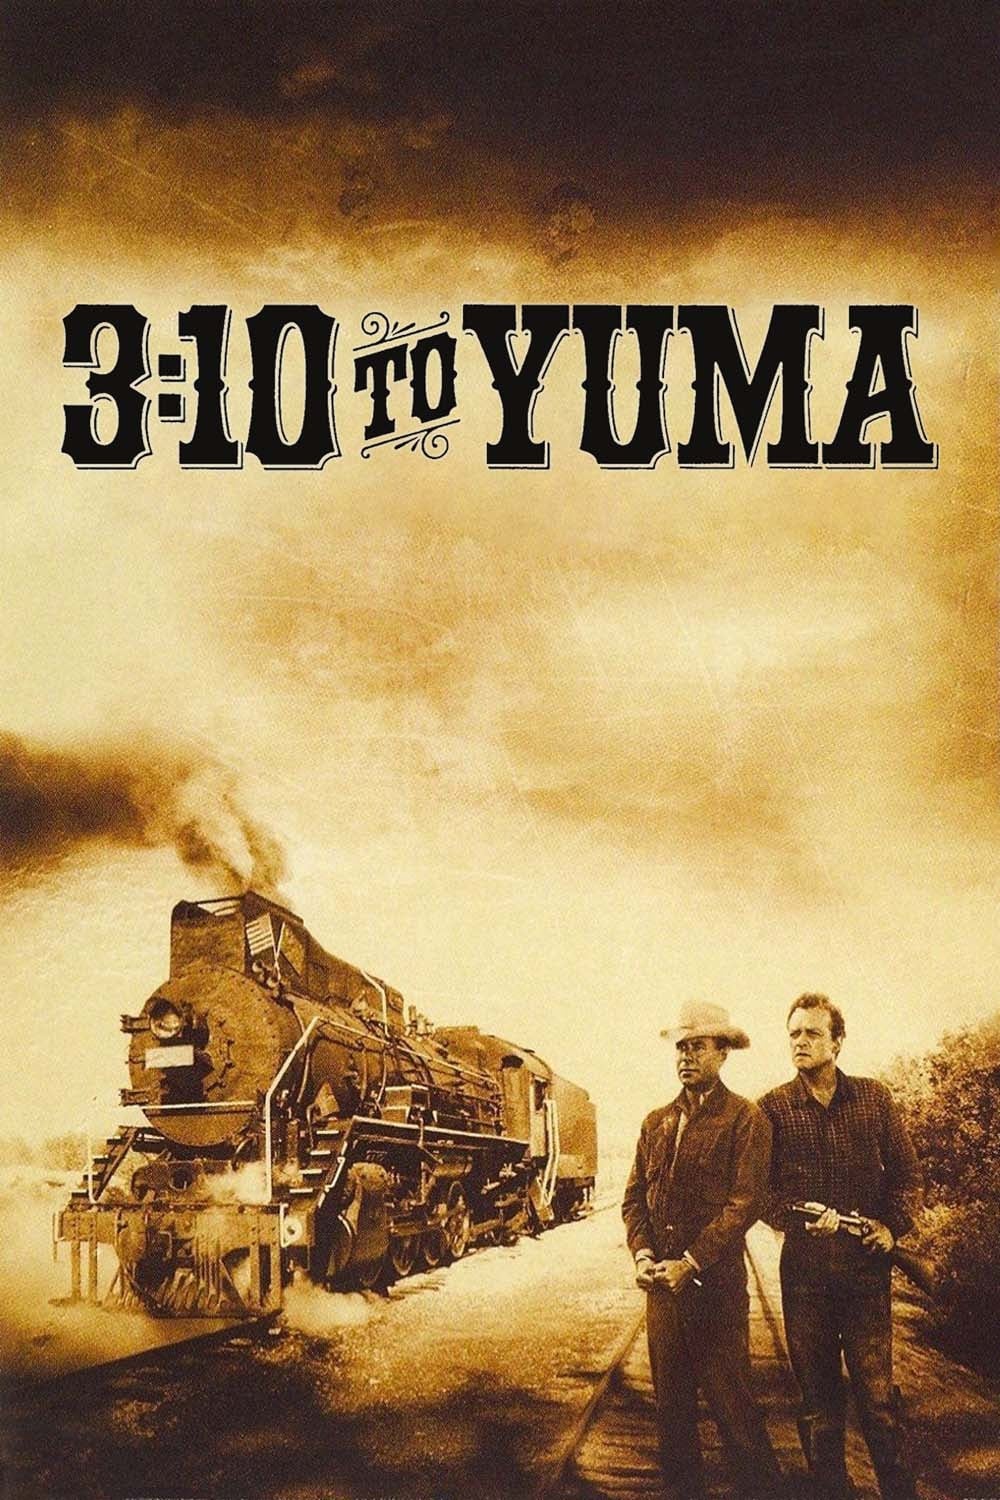 دانلود صوت دوبله فیلم 3:10 to Yuma 1957